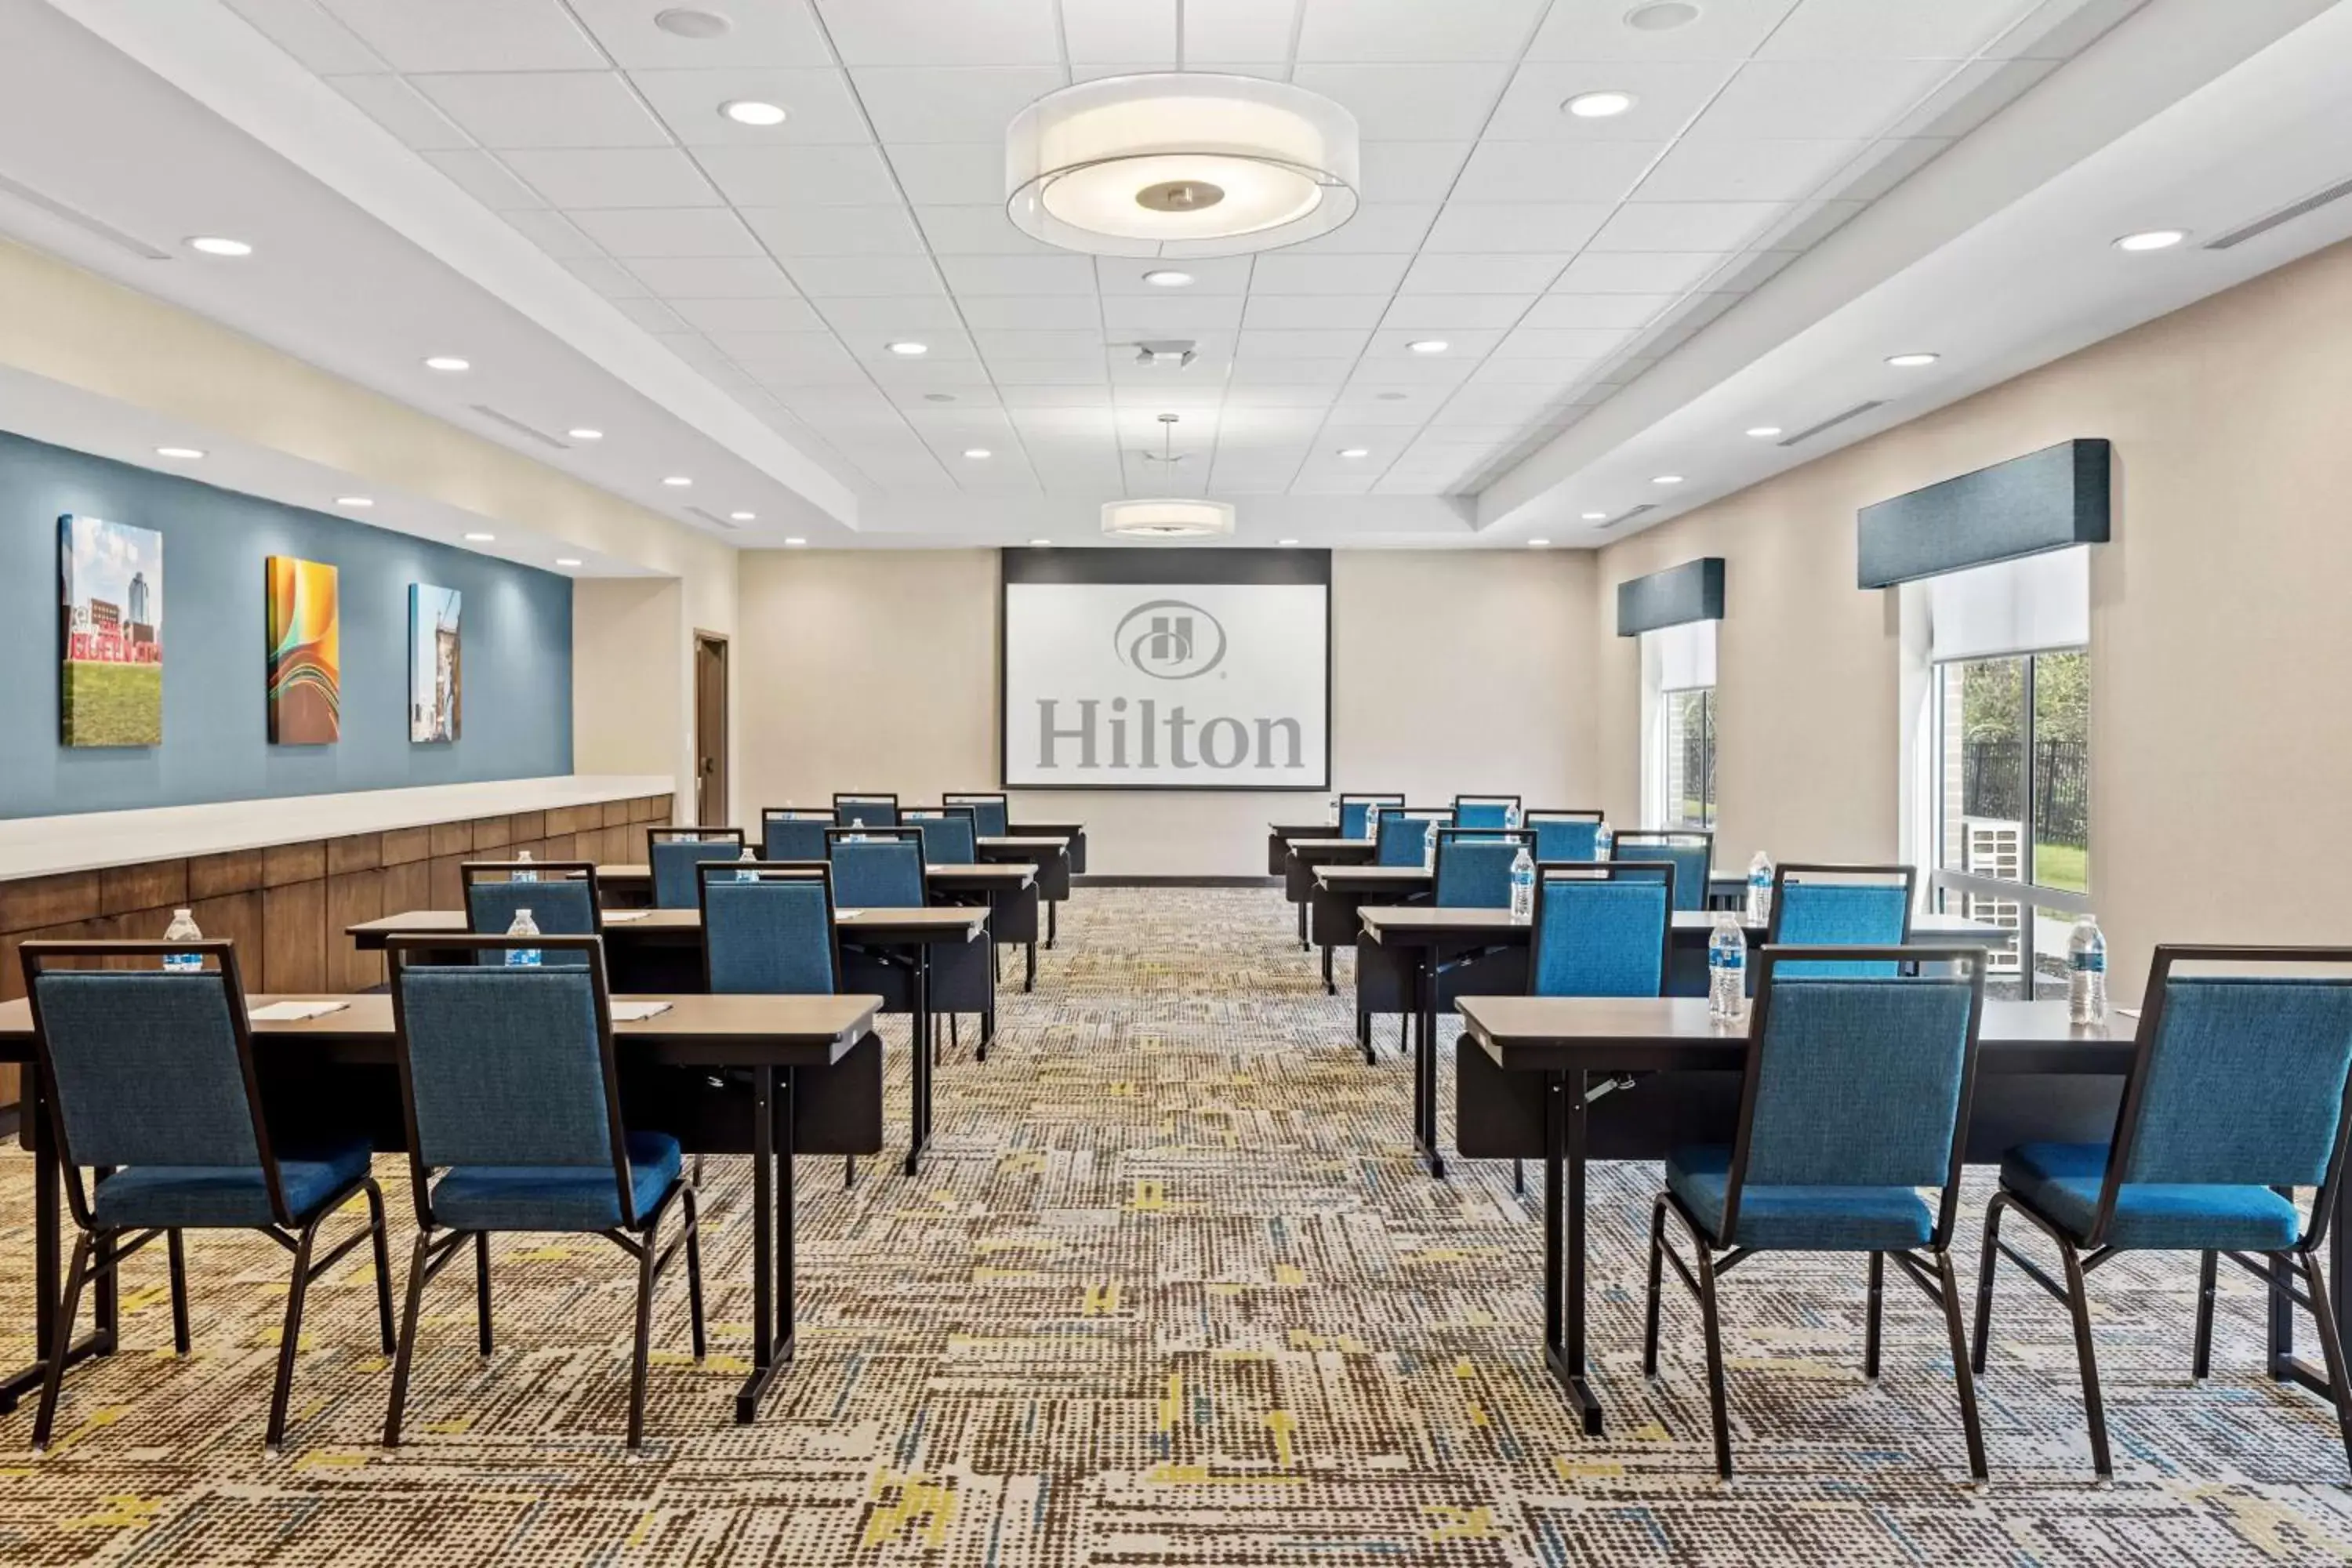 Meeting/conference room in Hampton Inn & Suites Cincinnati West, Oh